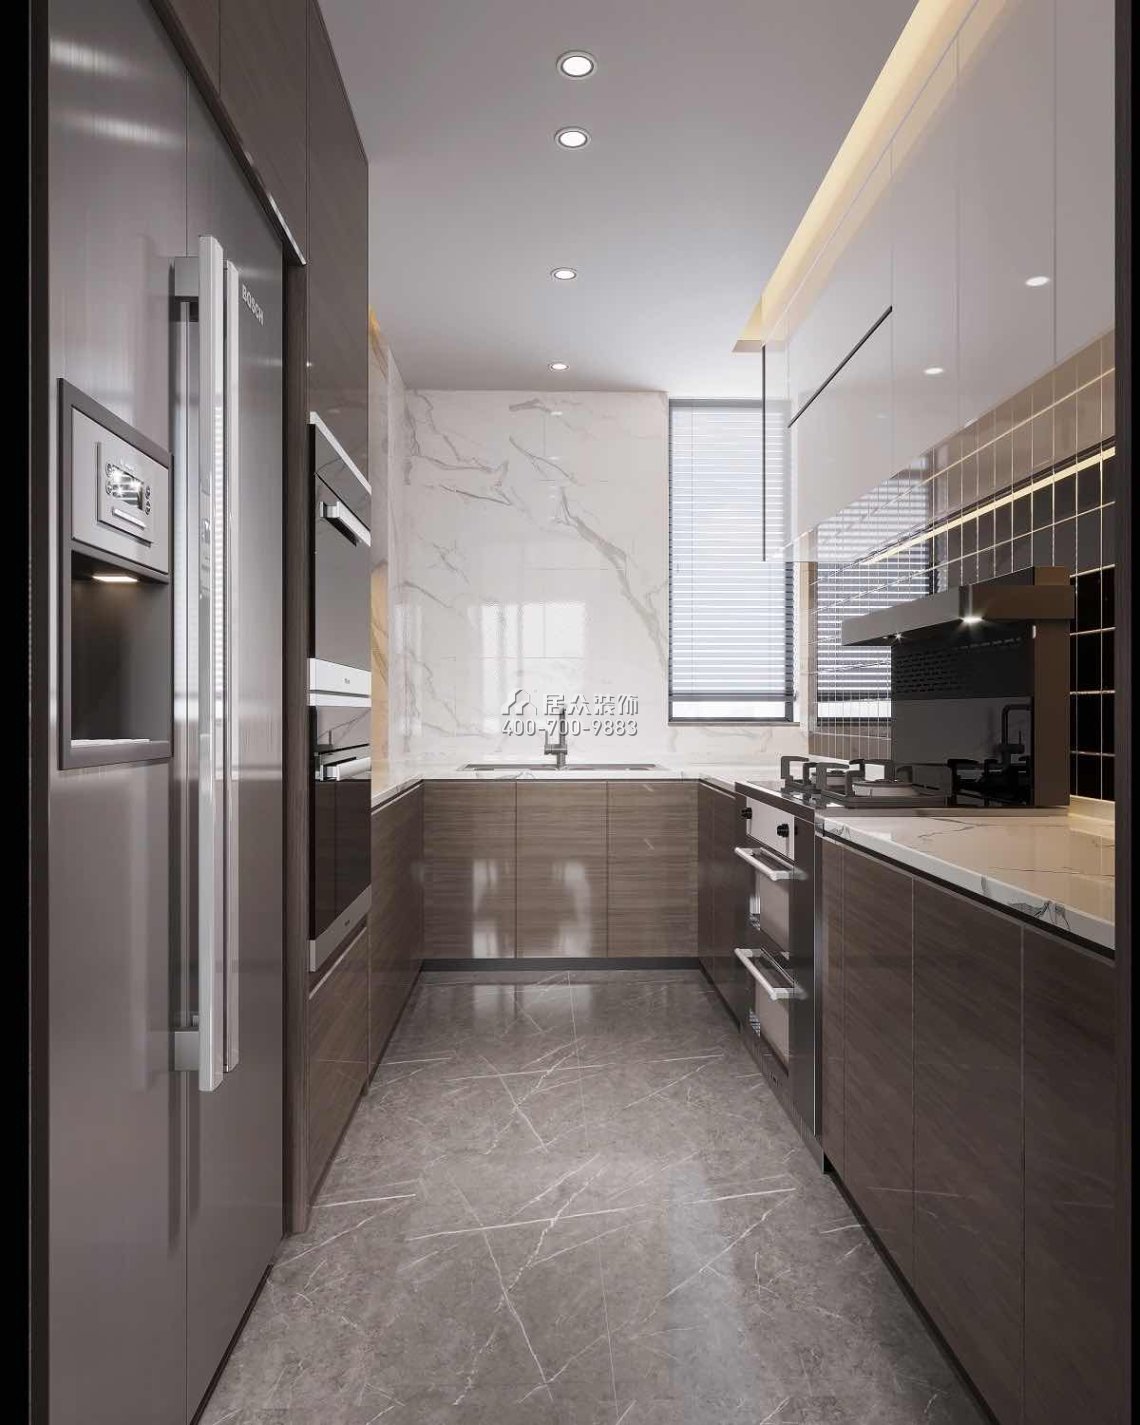 千林山居280平方米现代简约风格平层户型厨房装修效果图